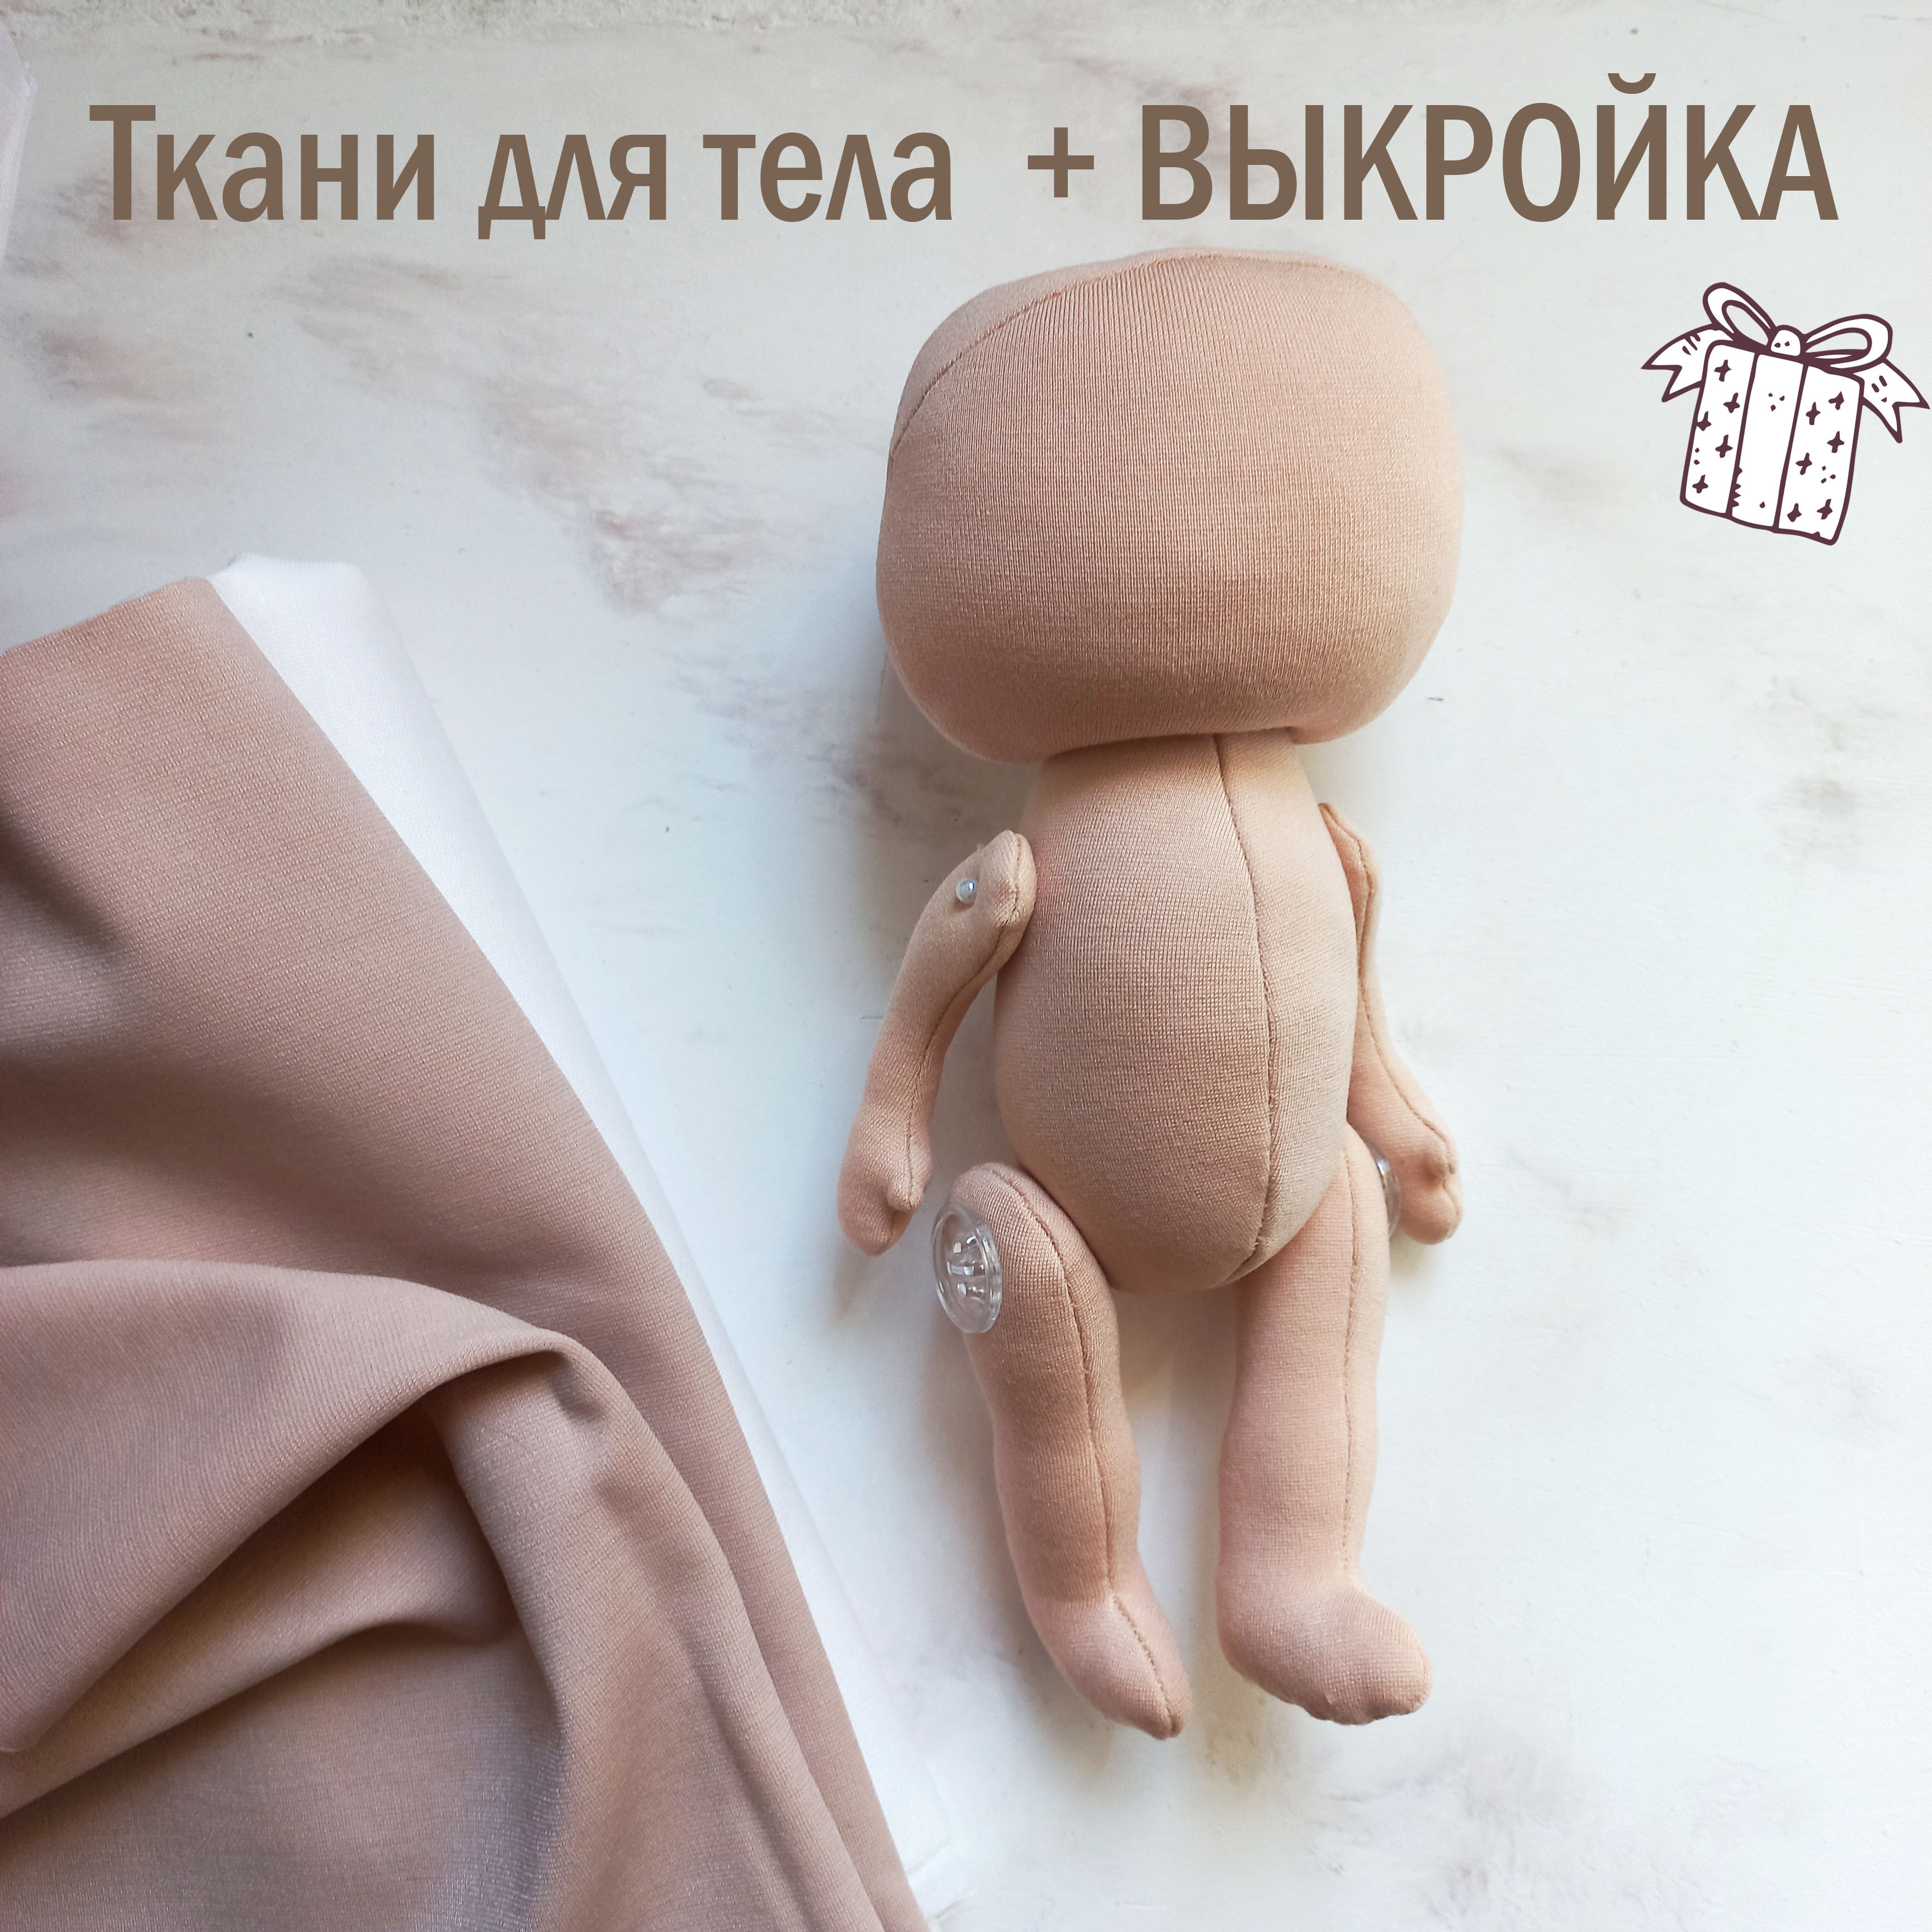 Как сшить куклу из ткани своими руками?